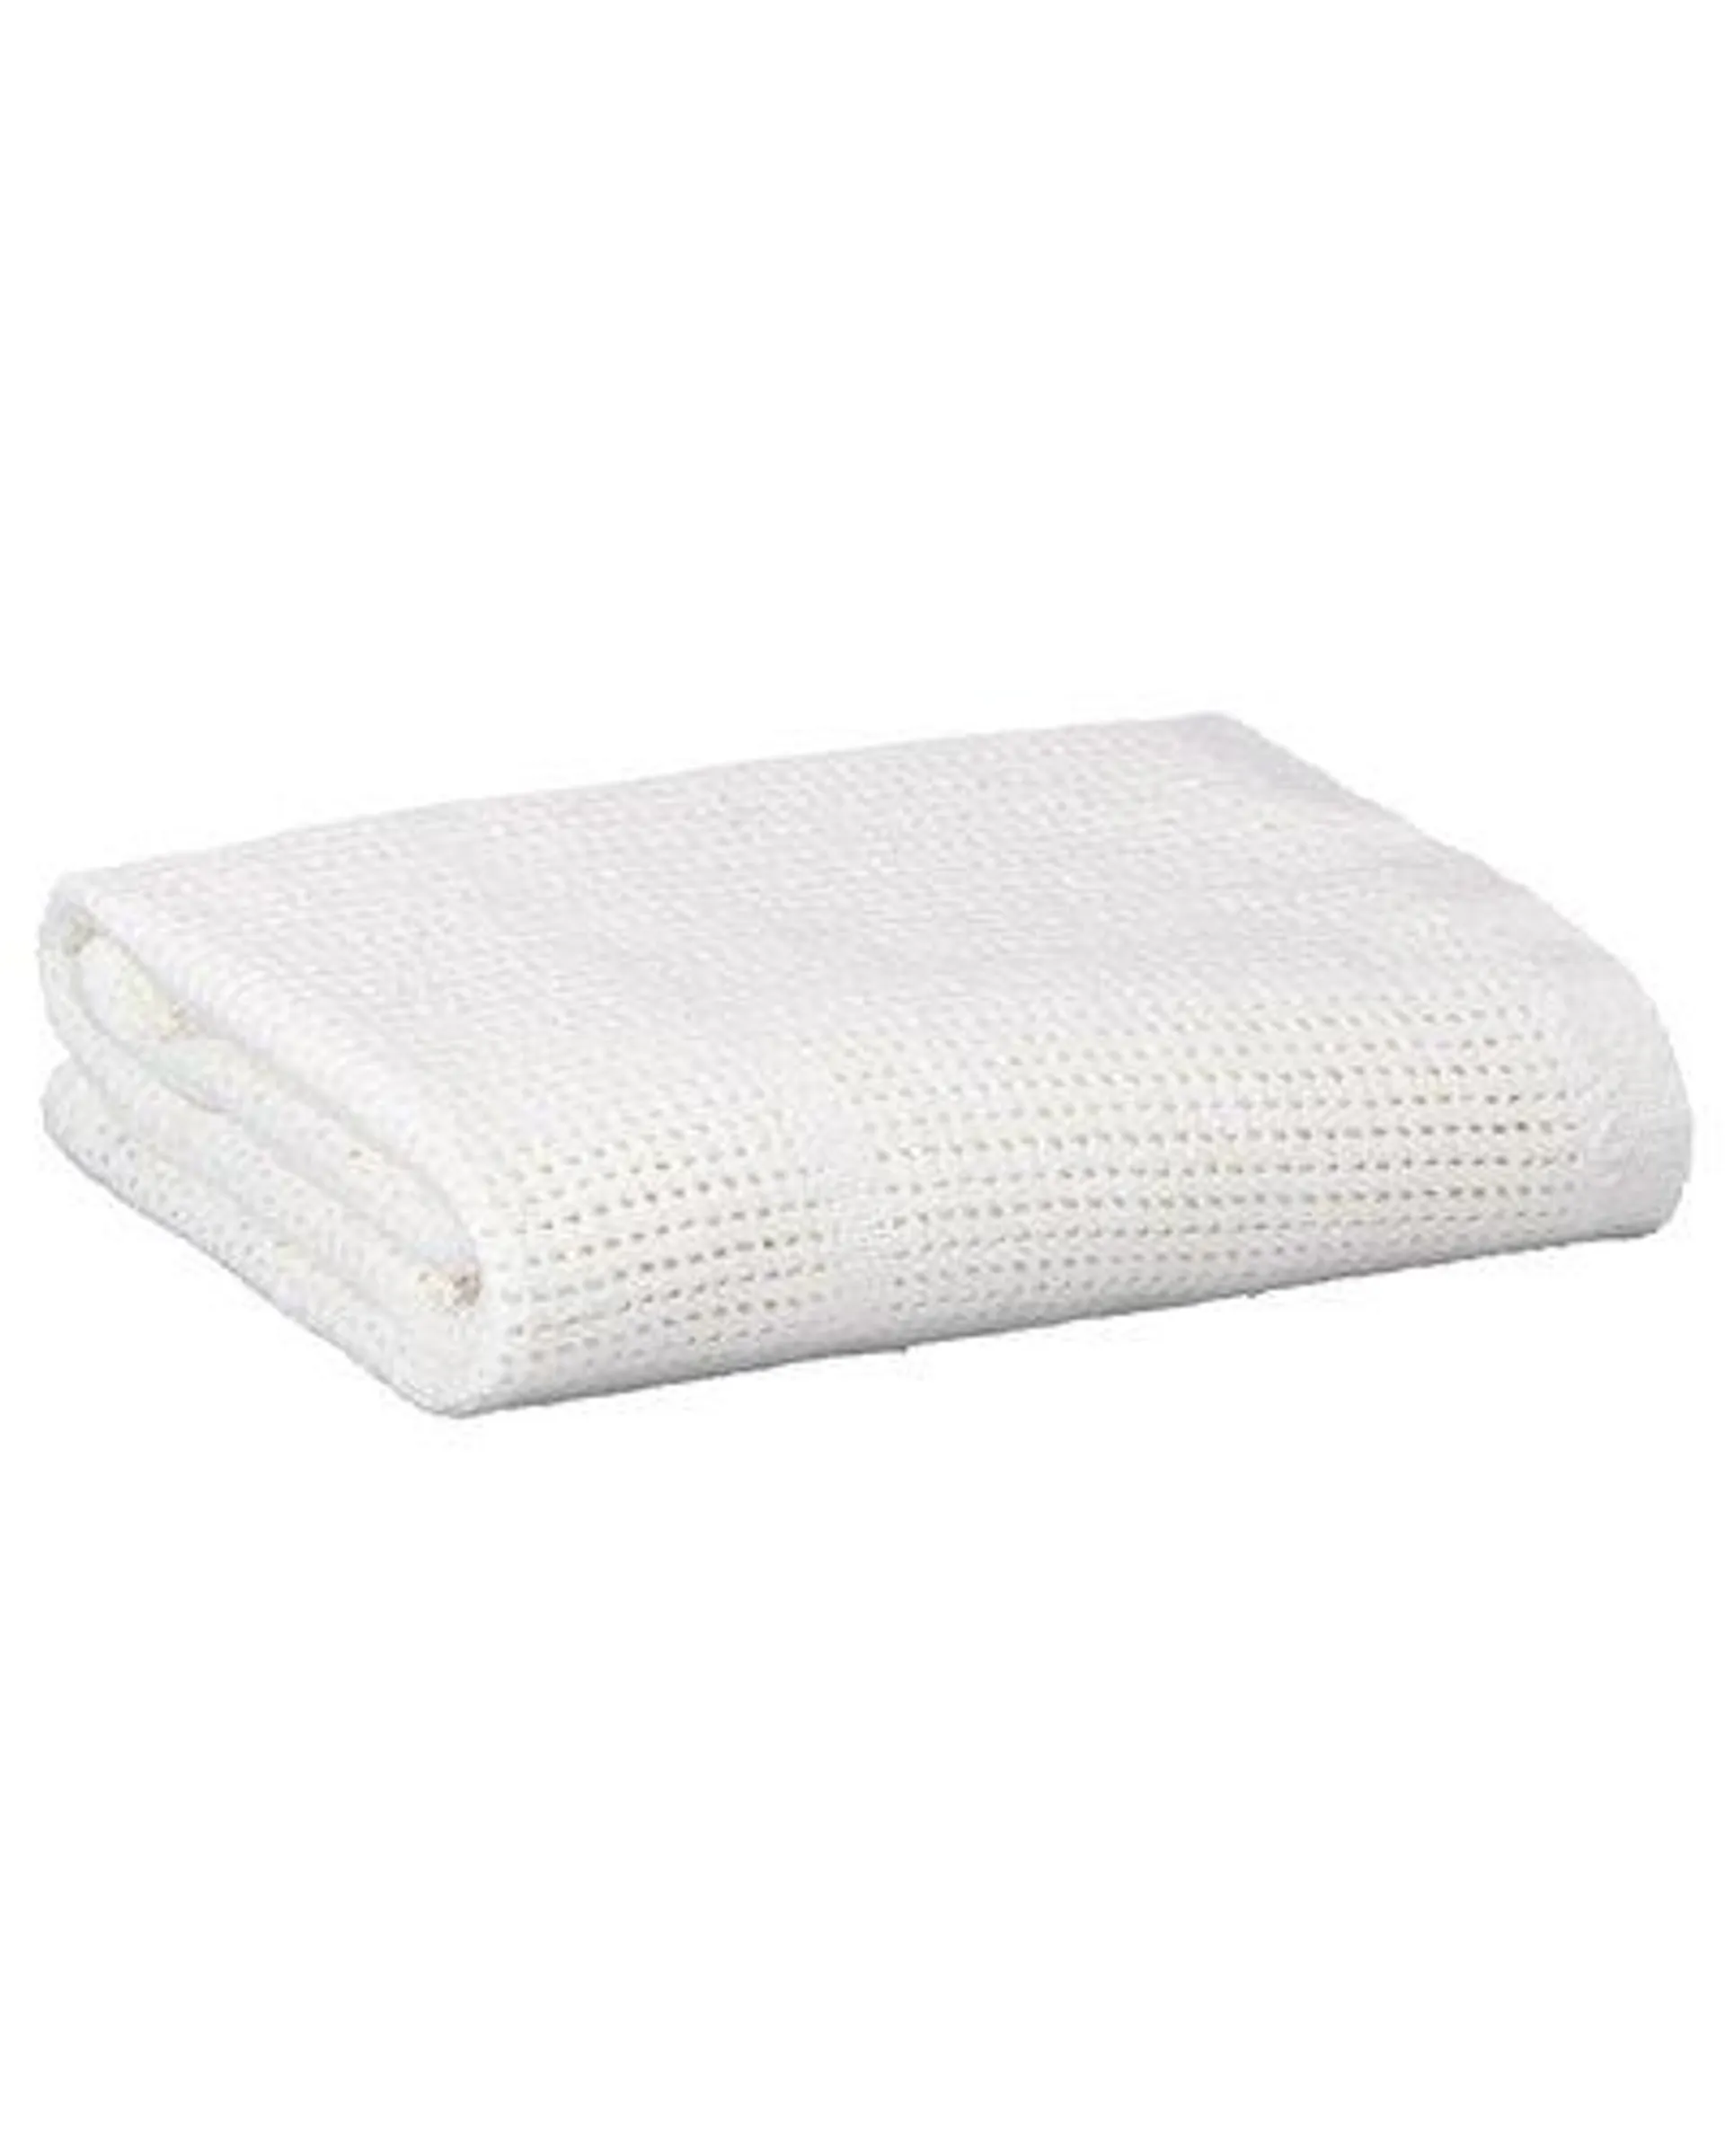 Horrockses 100% Cotton Panelled Cellular Blanket 180 x 230 - White